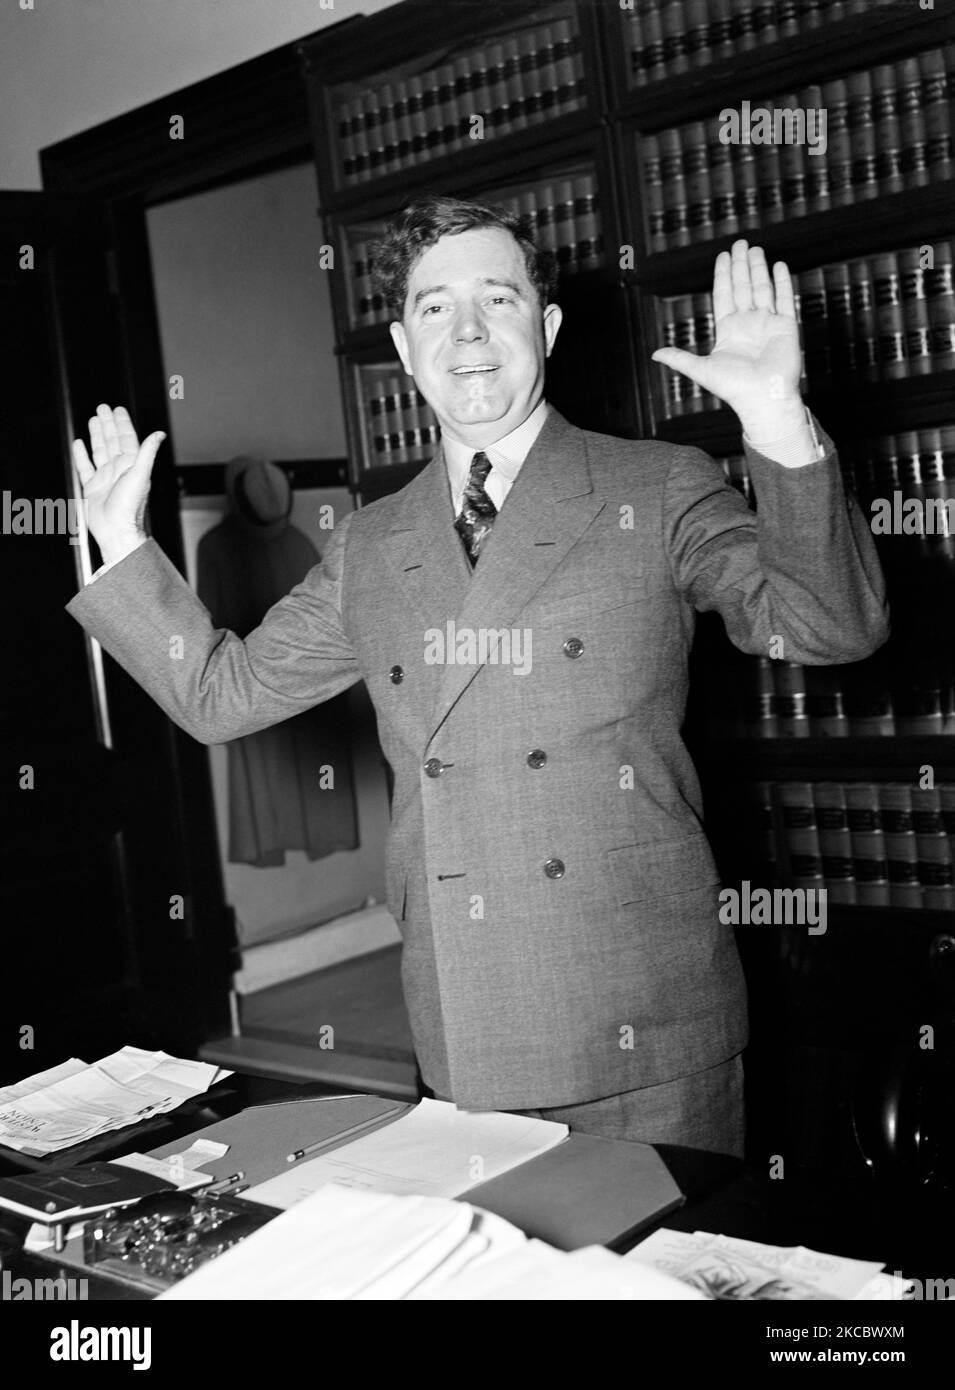 Der Senator von Louisiana, Huey P. Long, der im Januar 1935 an seinem Schreibtisch stand, posierte mit den Händen nach oben. Stockfoto